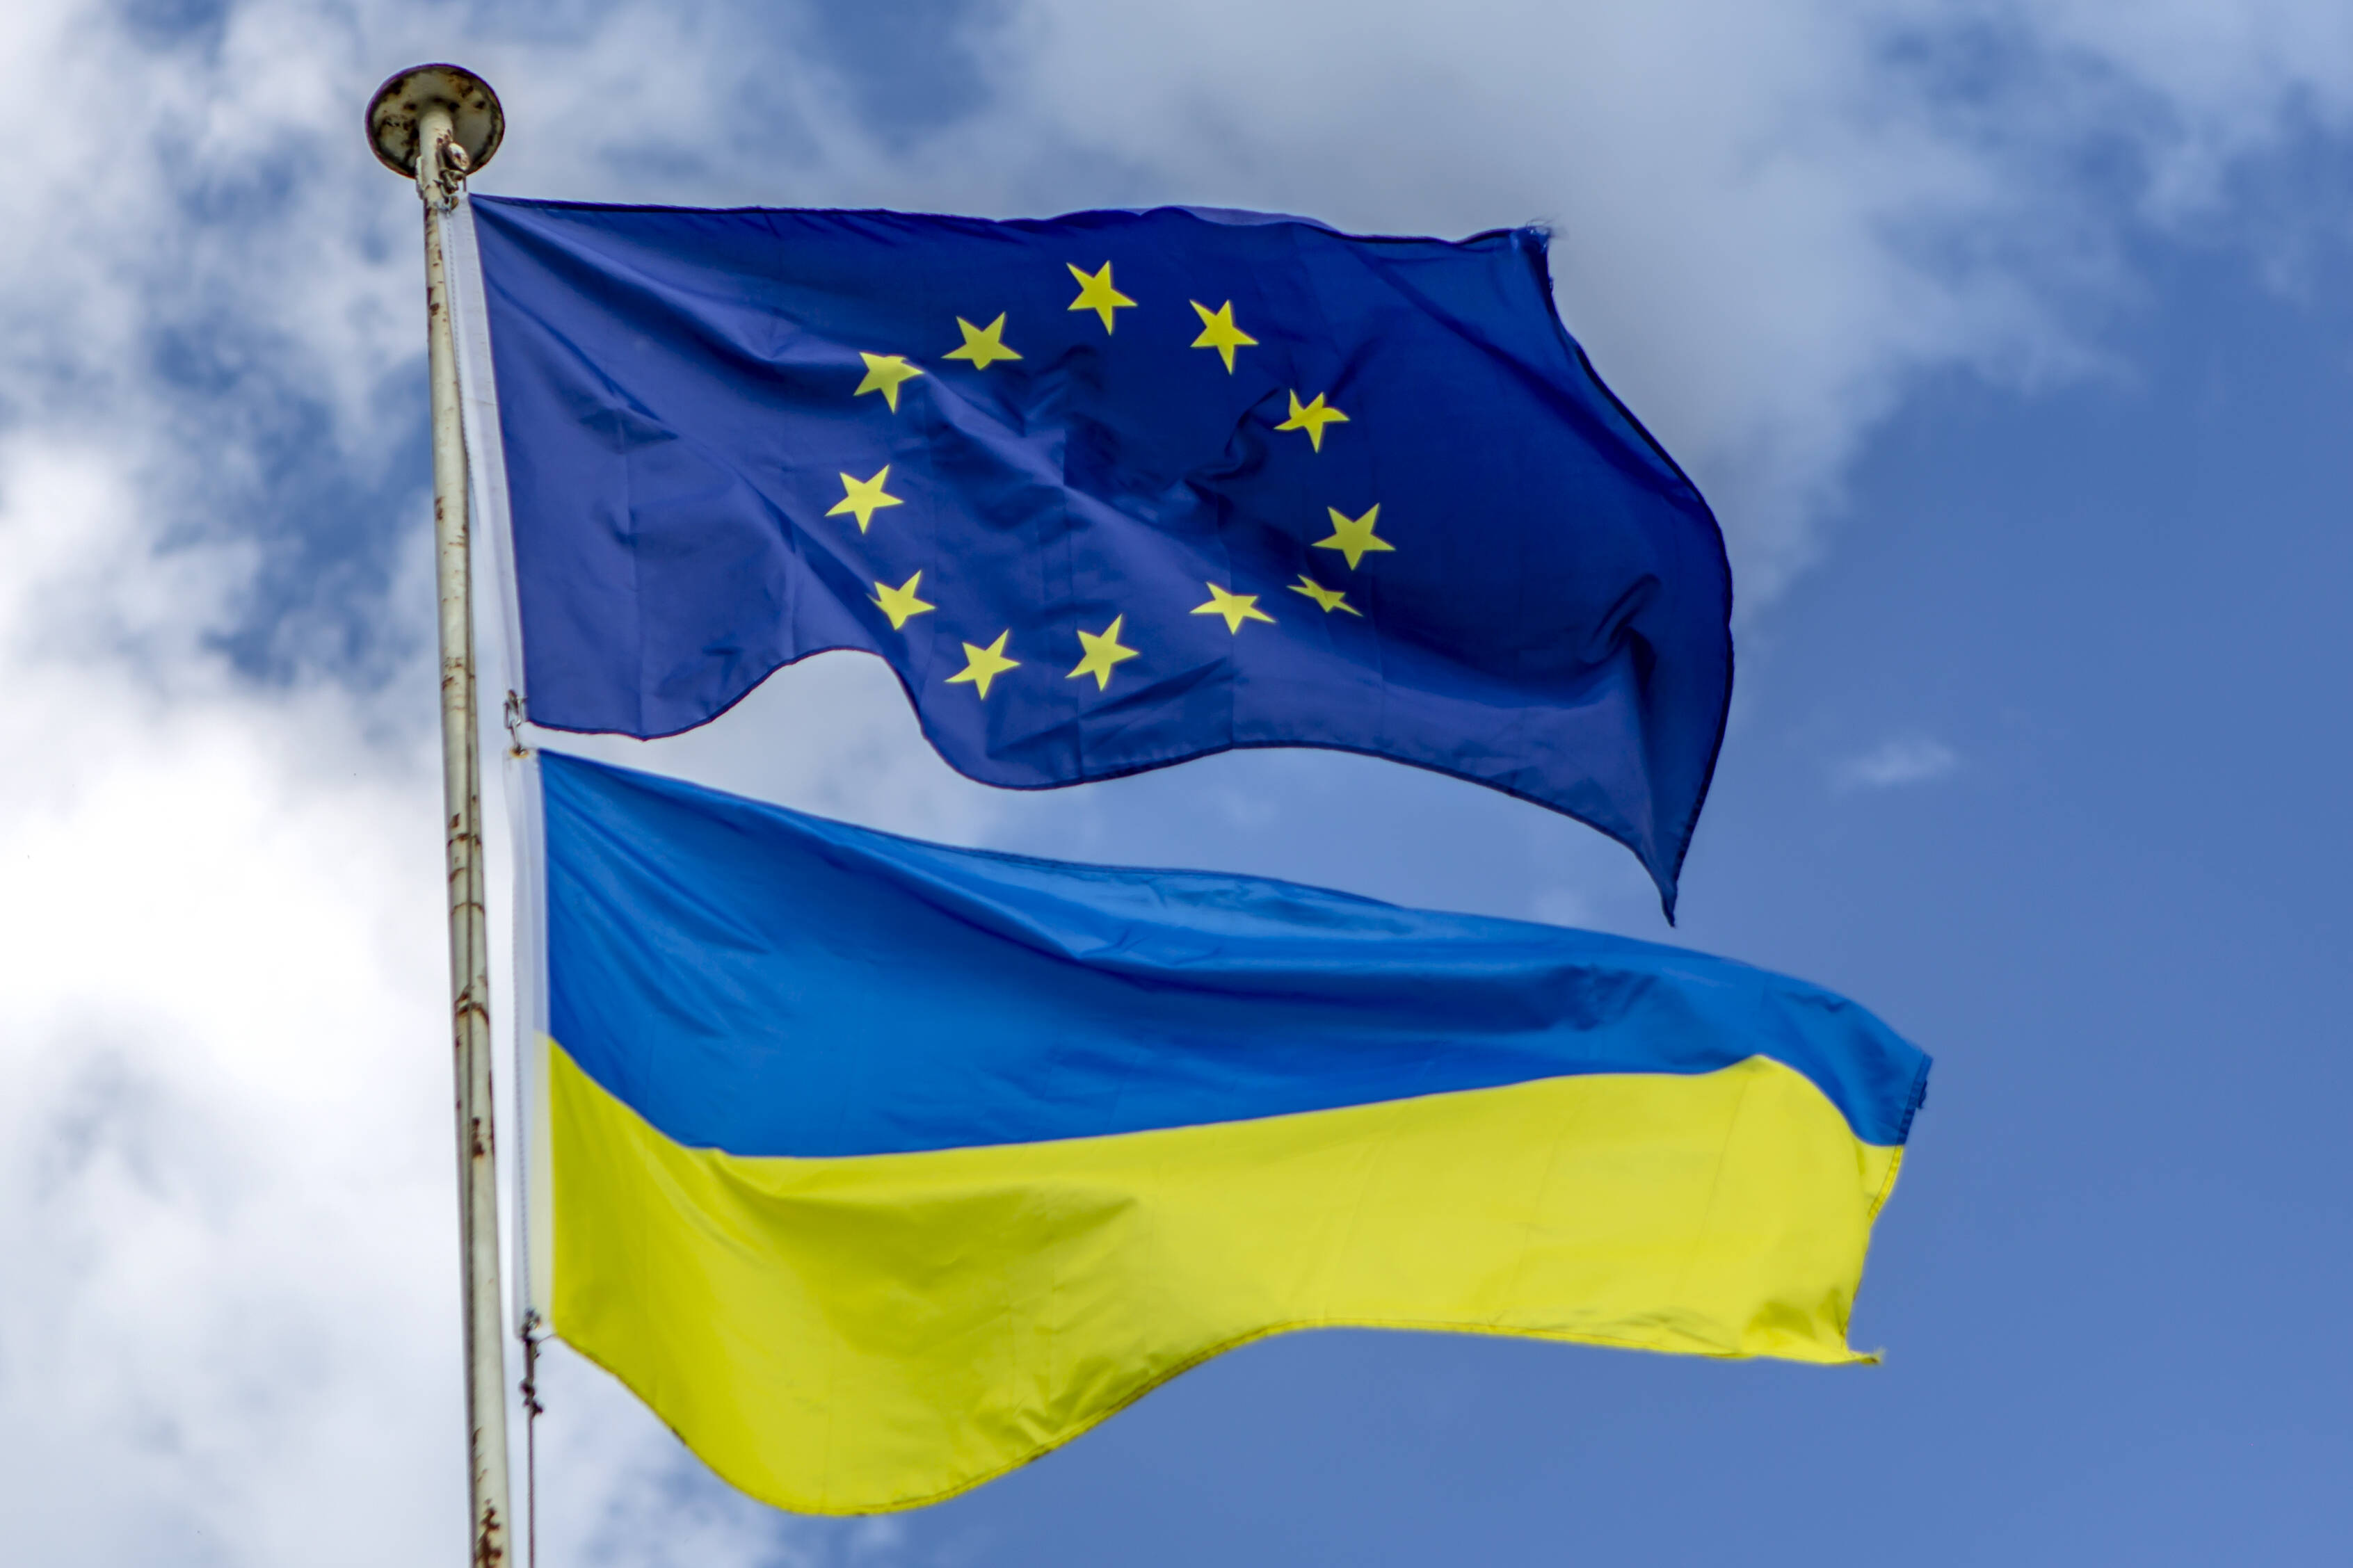 Die Ukraine gehört nach Europa, sagt die SPD. Allerdings muss sie dieselben Kriterien erfüllen, wie alle anderen Beitrittskandidaten auch.